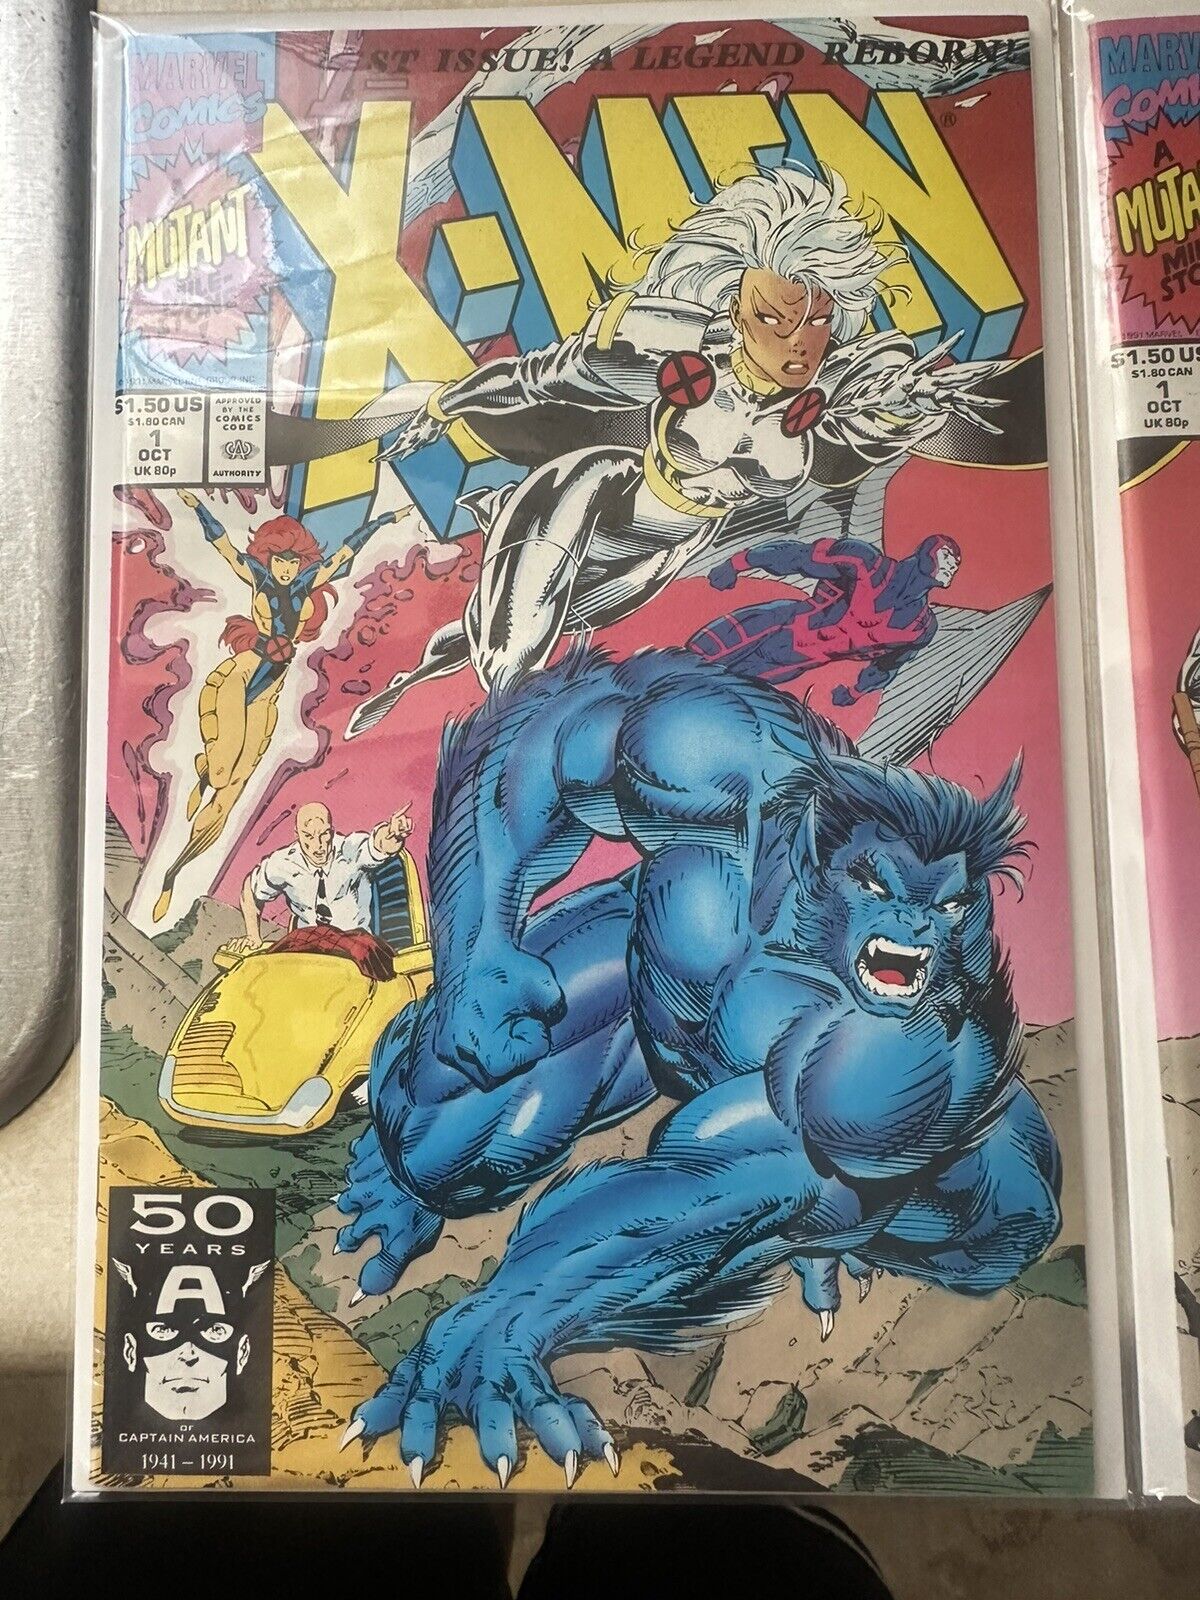 X-Men #1 Special Collectors Edition (Marvel Comics October 1991)